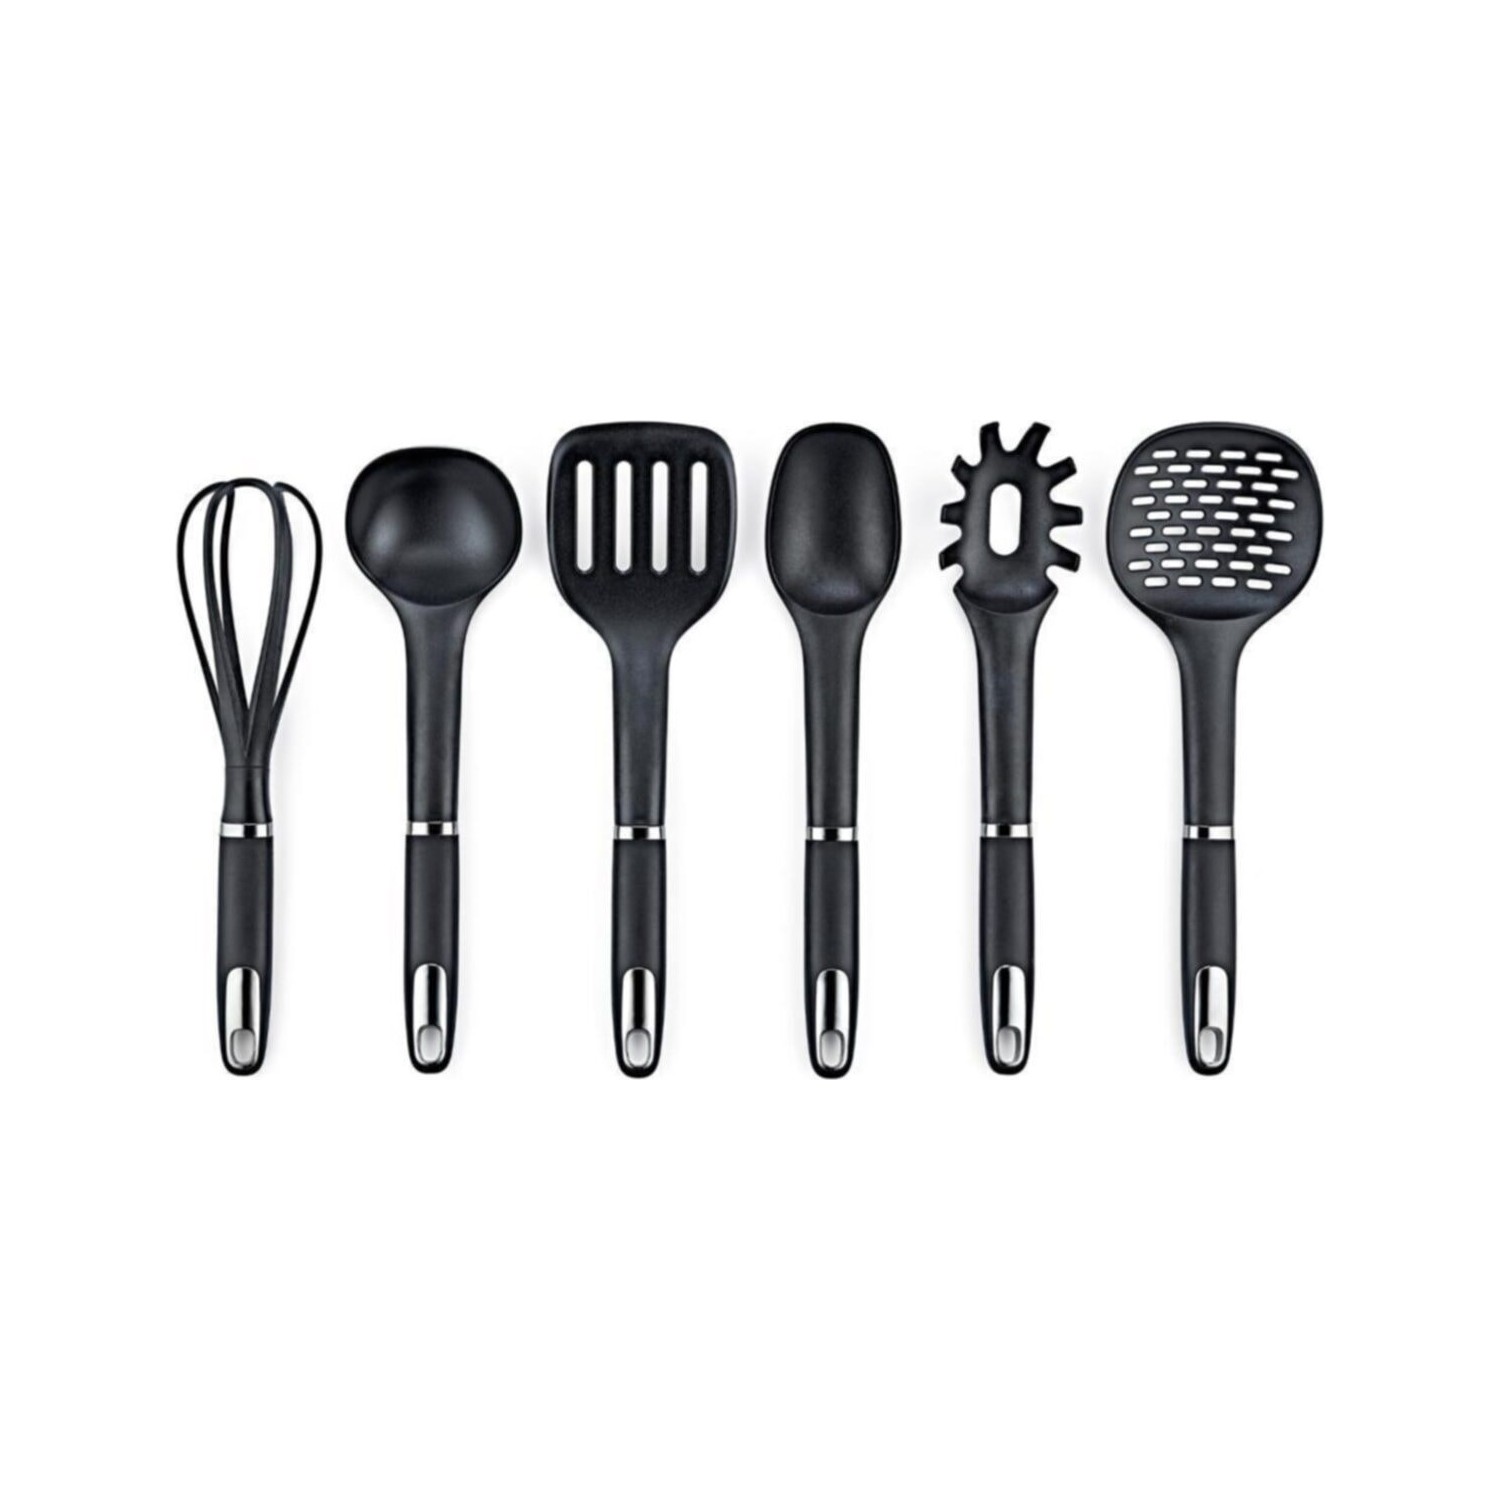 Набор кухонных принадлежностей Vipahmet из 6 предметов, черный набор кухонных принадлежностей ownland 6 предметов белый